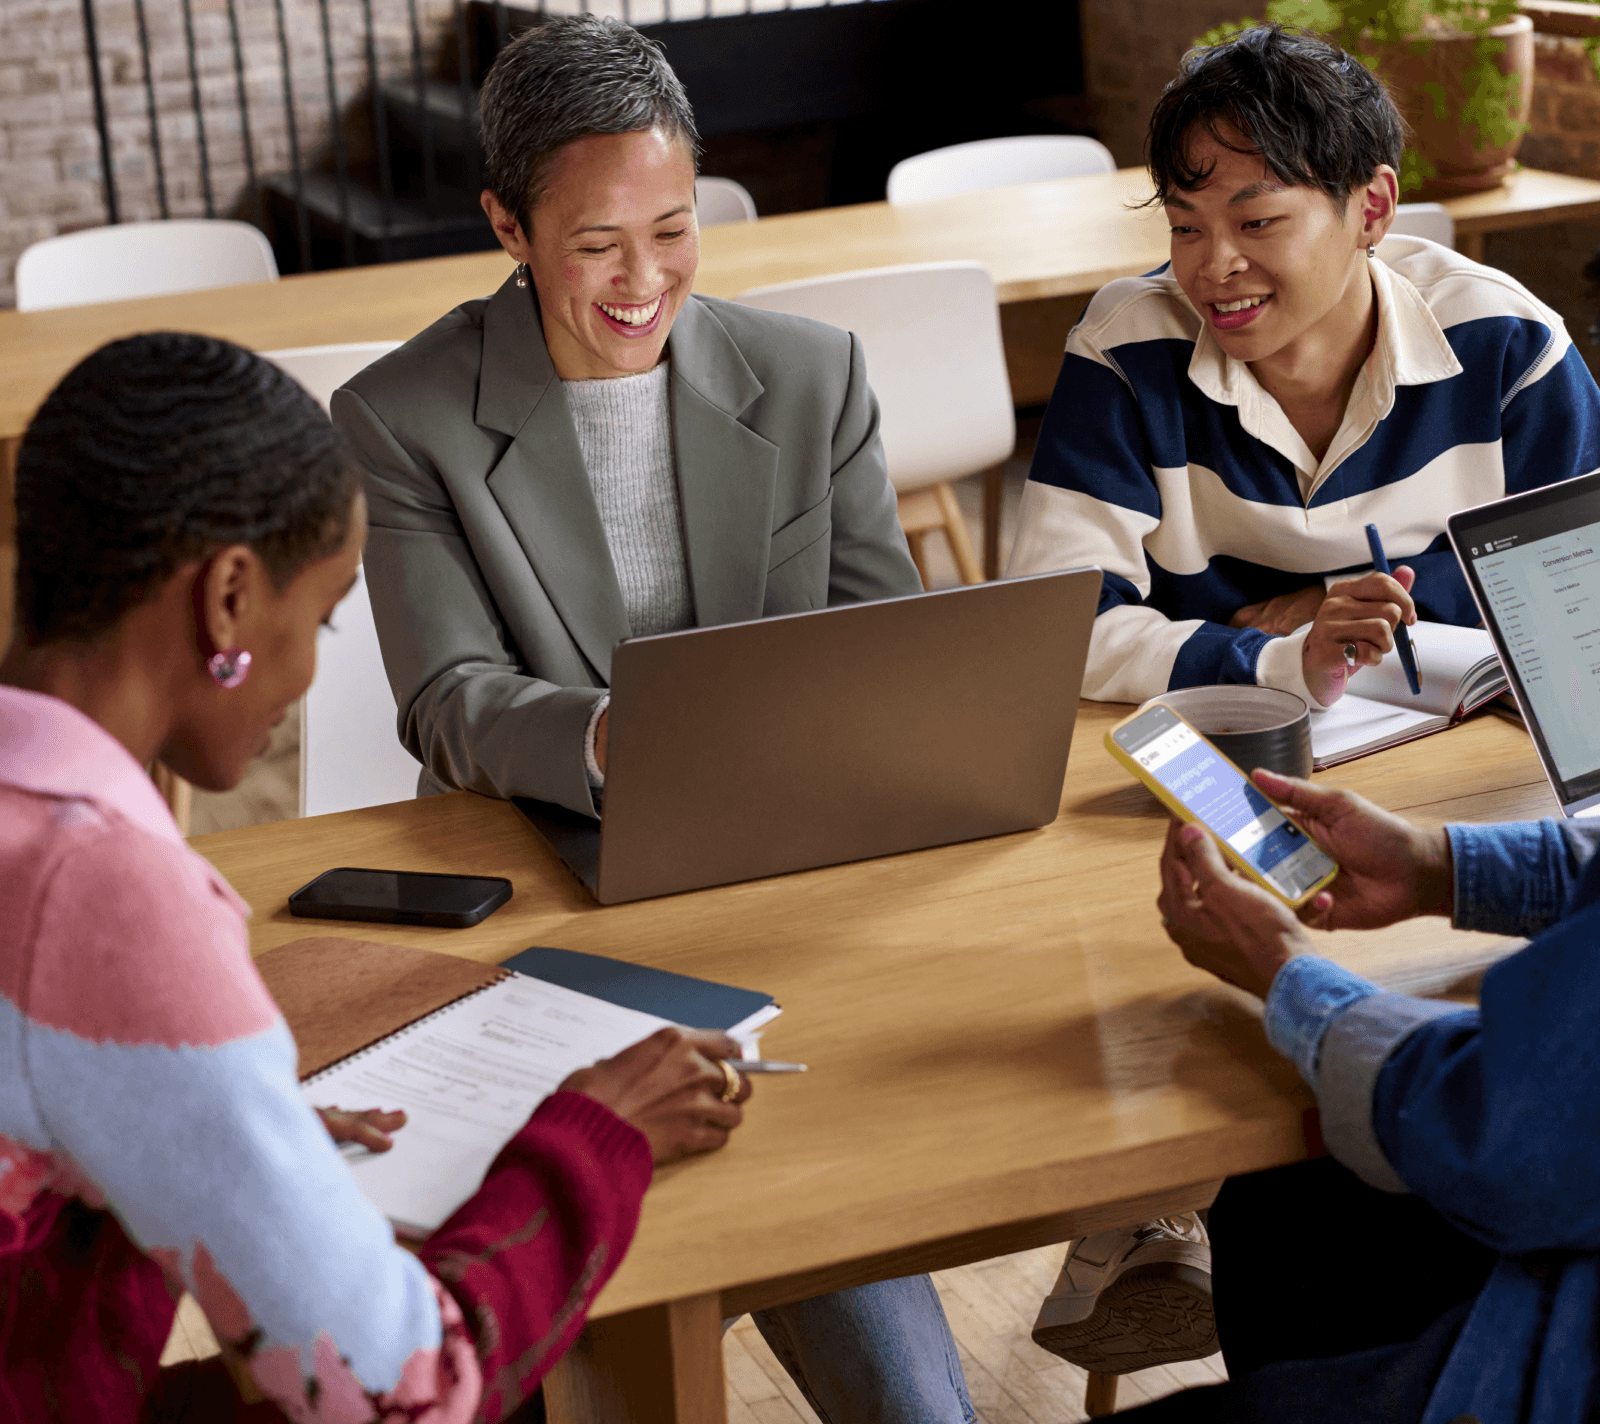 Image de collègues, souriants et assis autour d’une table de conférence avec des ordinateurs portables, des smartphones et des blocs-notes.